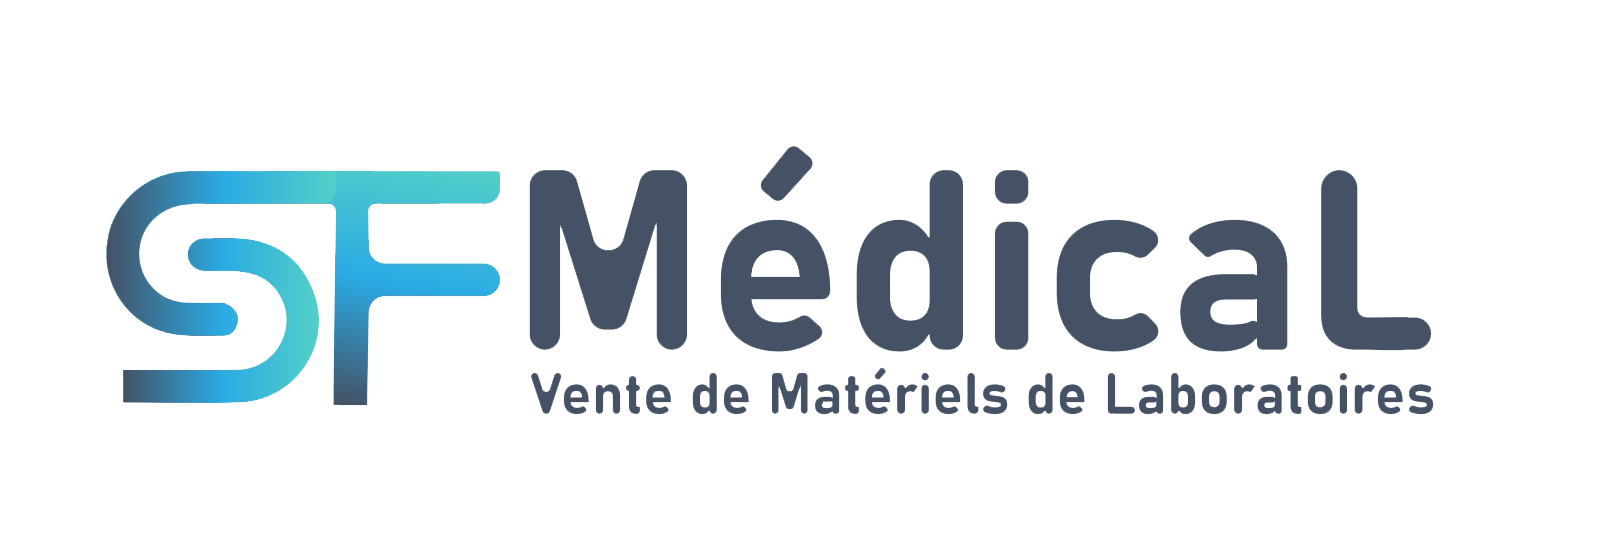 SF Medical | Société de Distribution des Equipements Médicaux, Diagnostics,Consommable et Réactifs